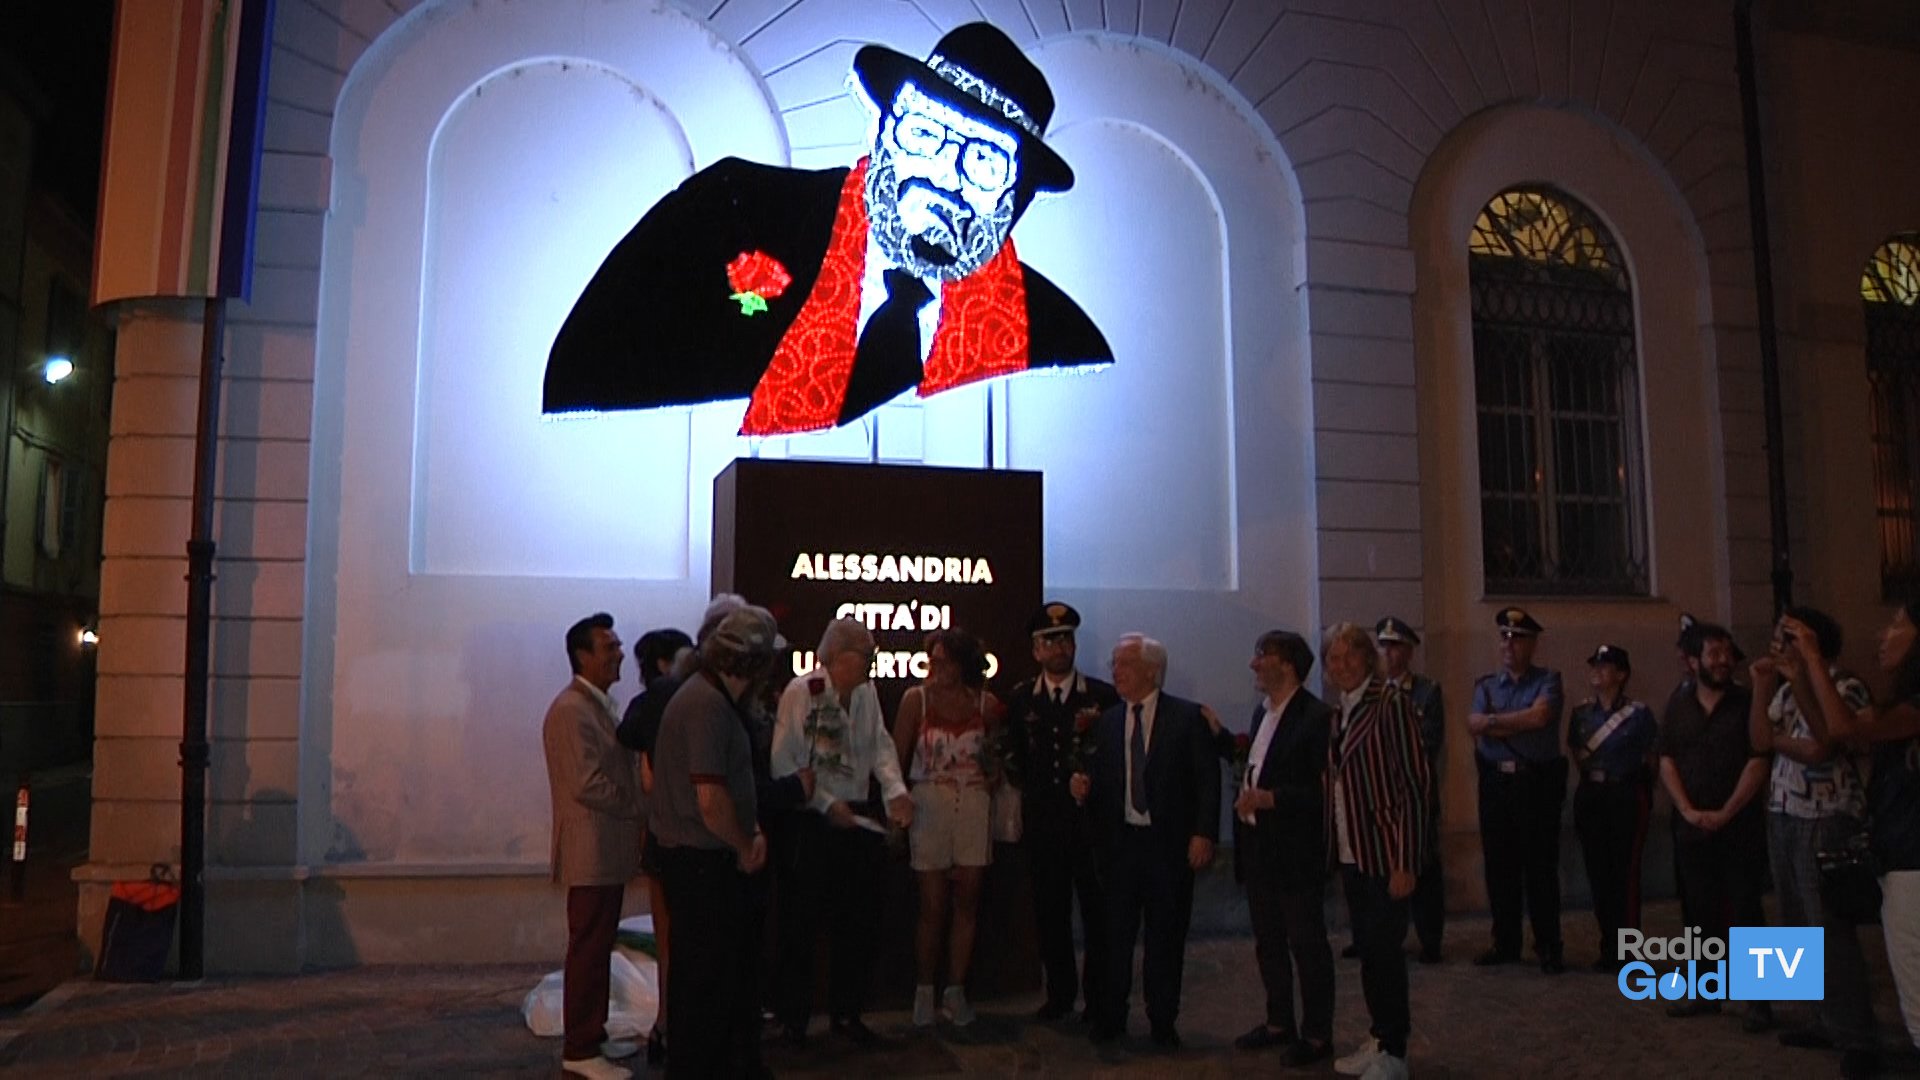 La luce di Umberto Eco illumina la Biblioteca di Alessandria